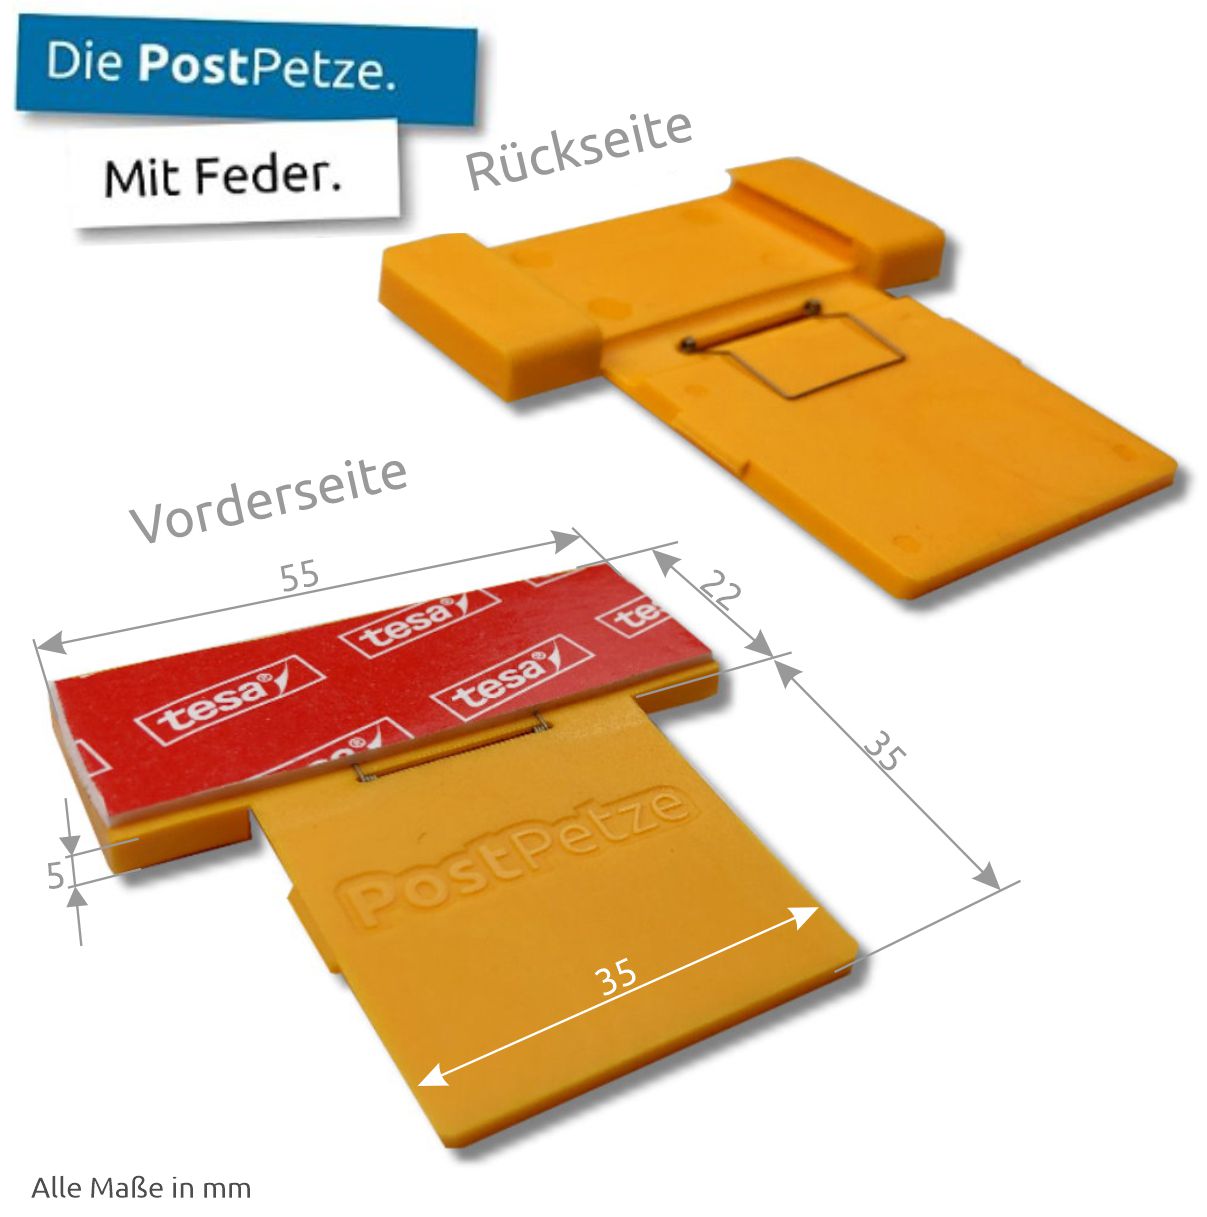 PostPetze | Dein Postmelder | Orange